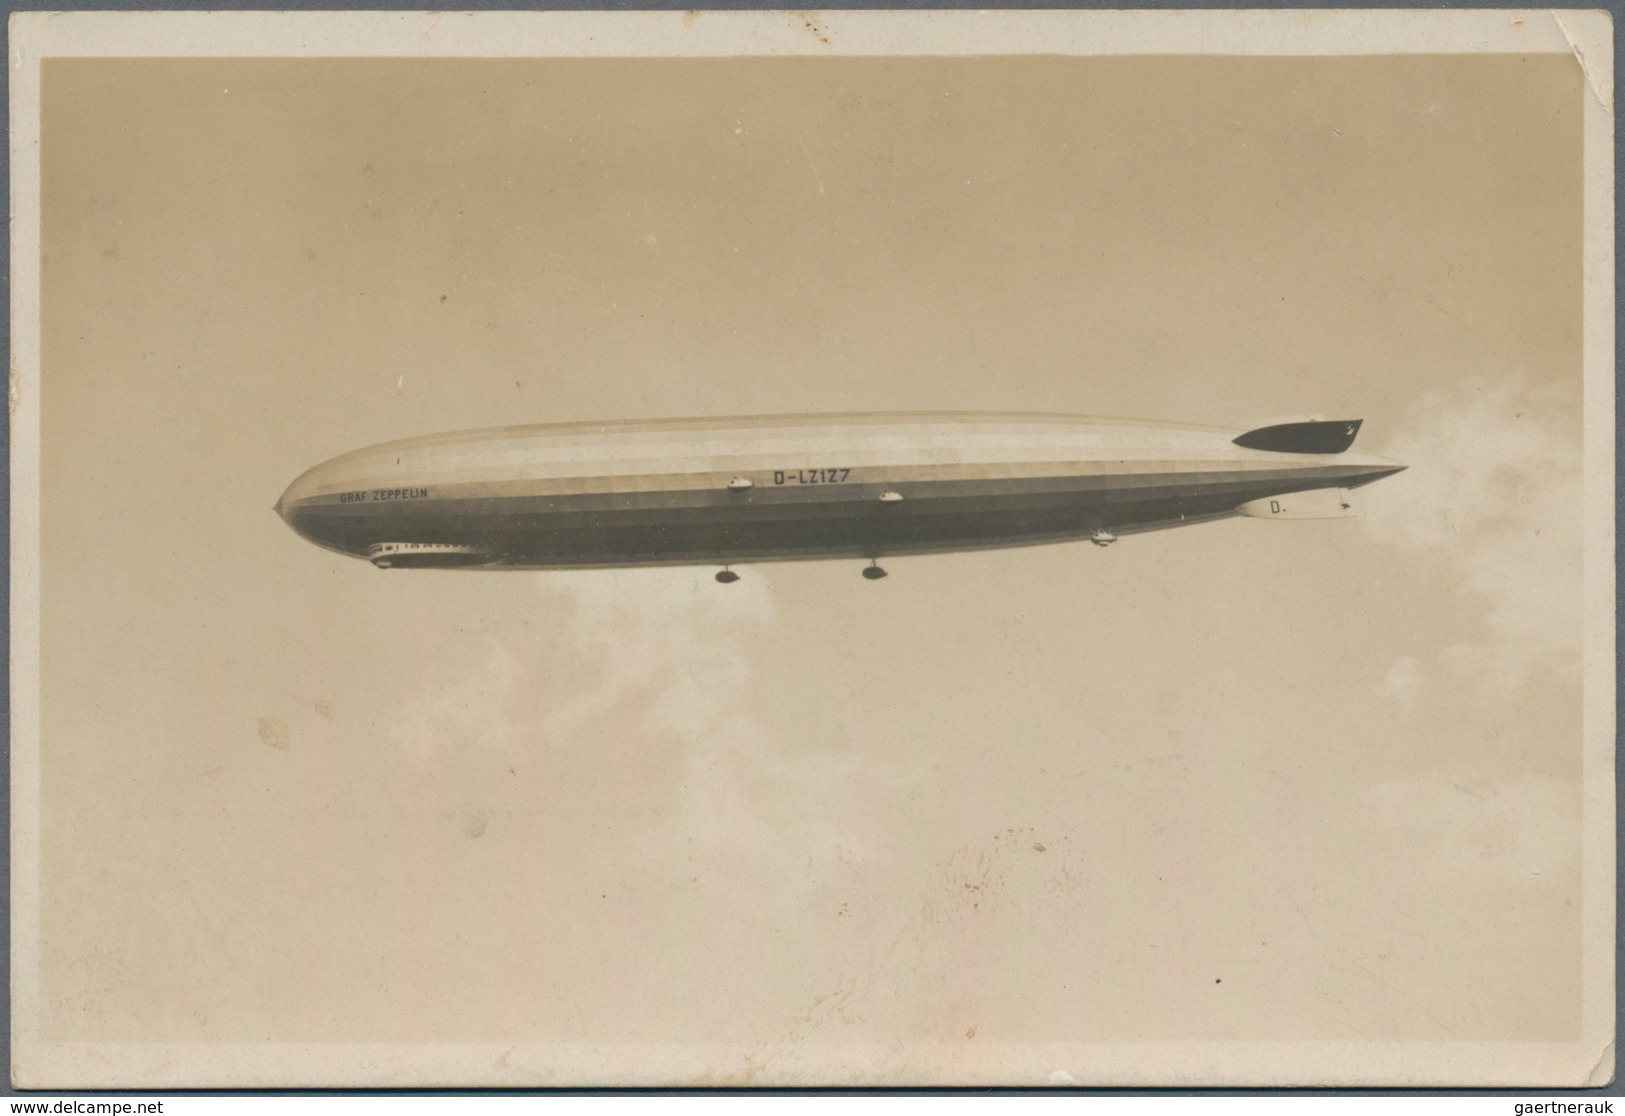 Zeppelinpost Deutschland: 1928, LZ 127, Unfrankierte Foto-AK Mit Rotem Bordpoststempel Vom 11.OKT.19 - Luchtpost & Zeppelin